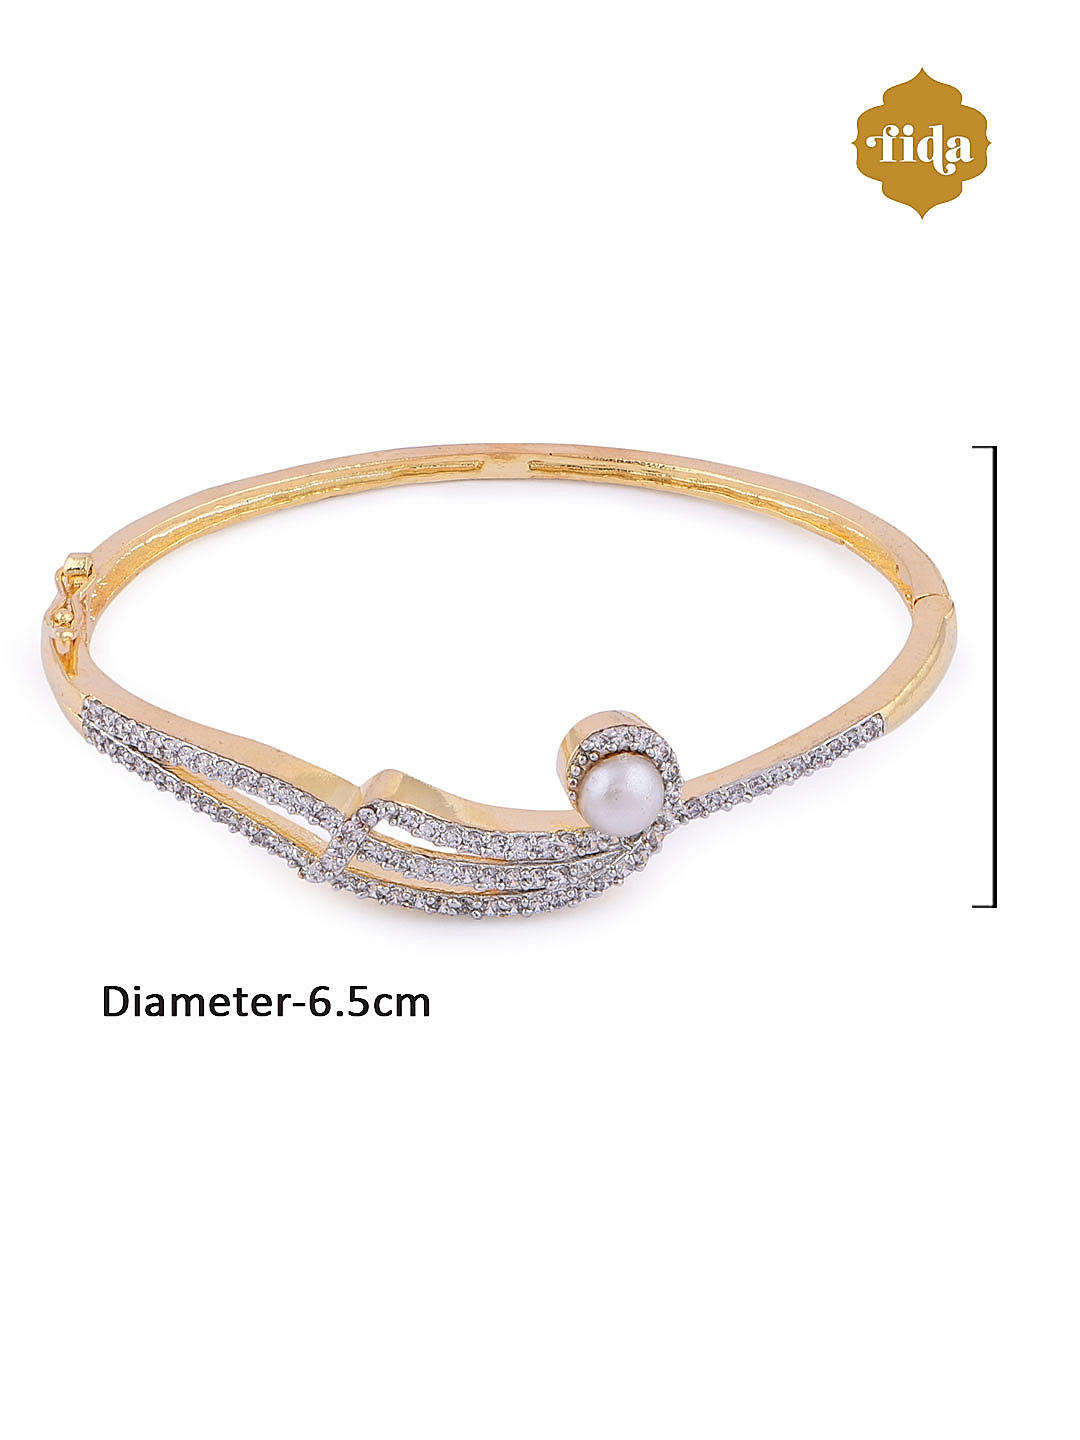 Stunning American Diamond Bracelets-chantamquoc.vn